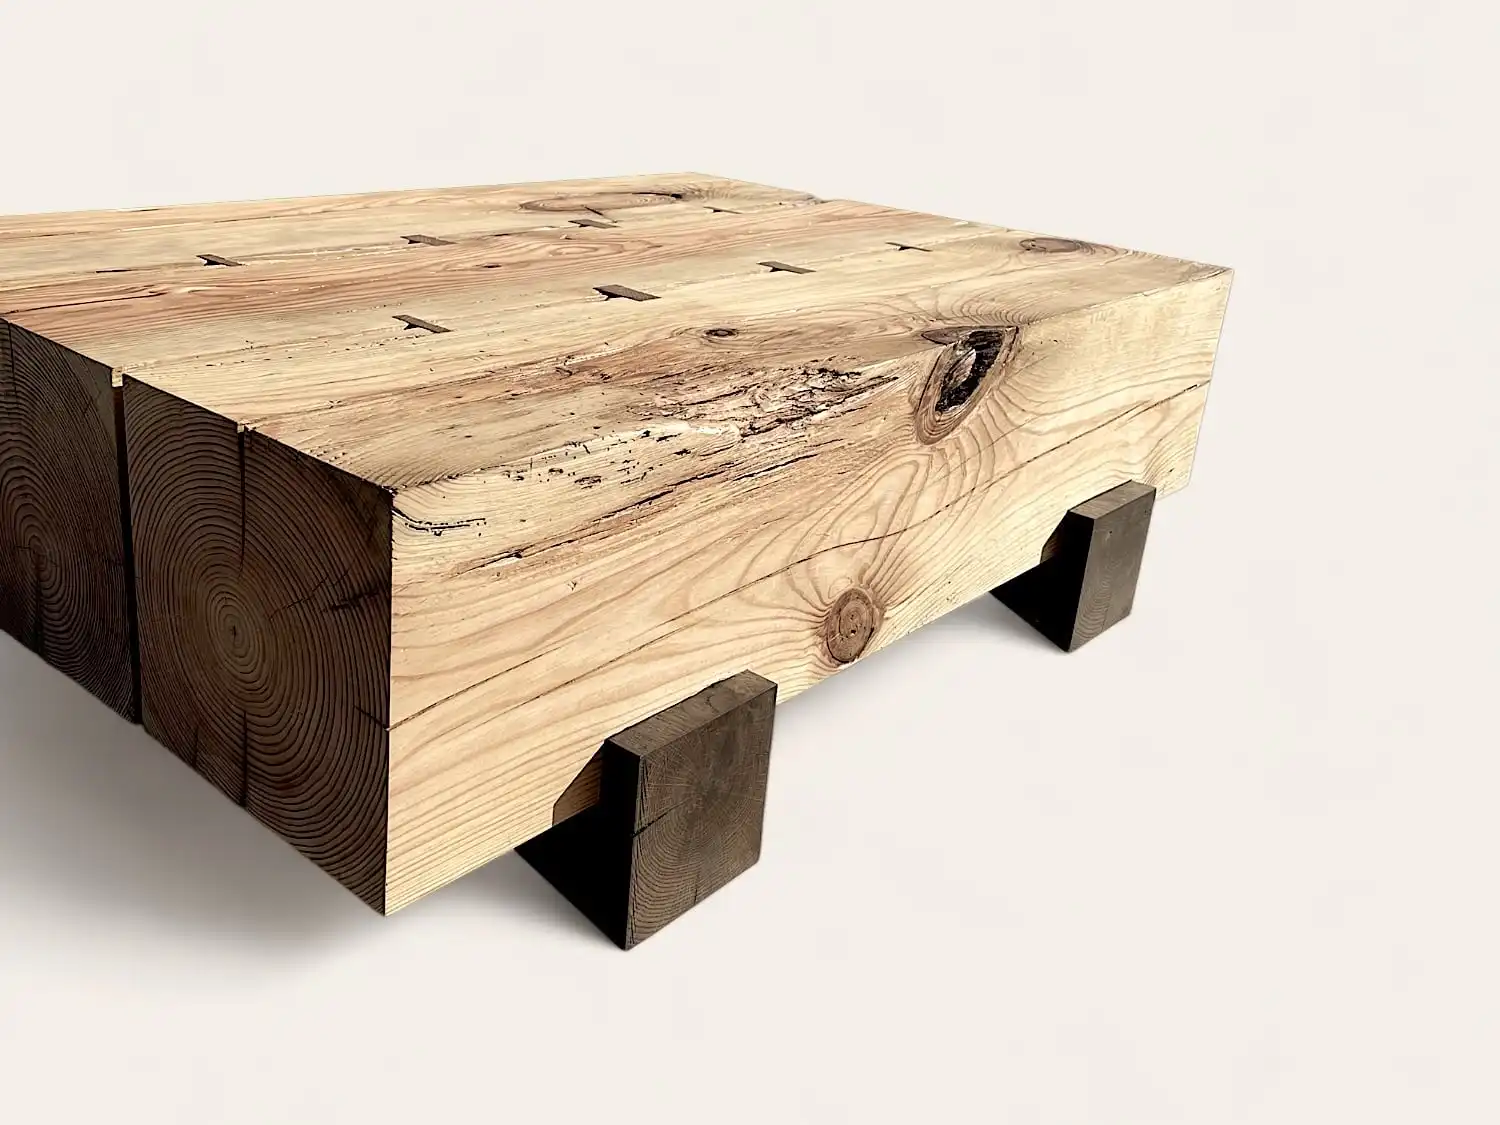 Une table basse en bois rustique.